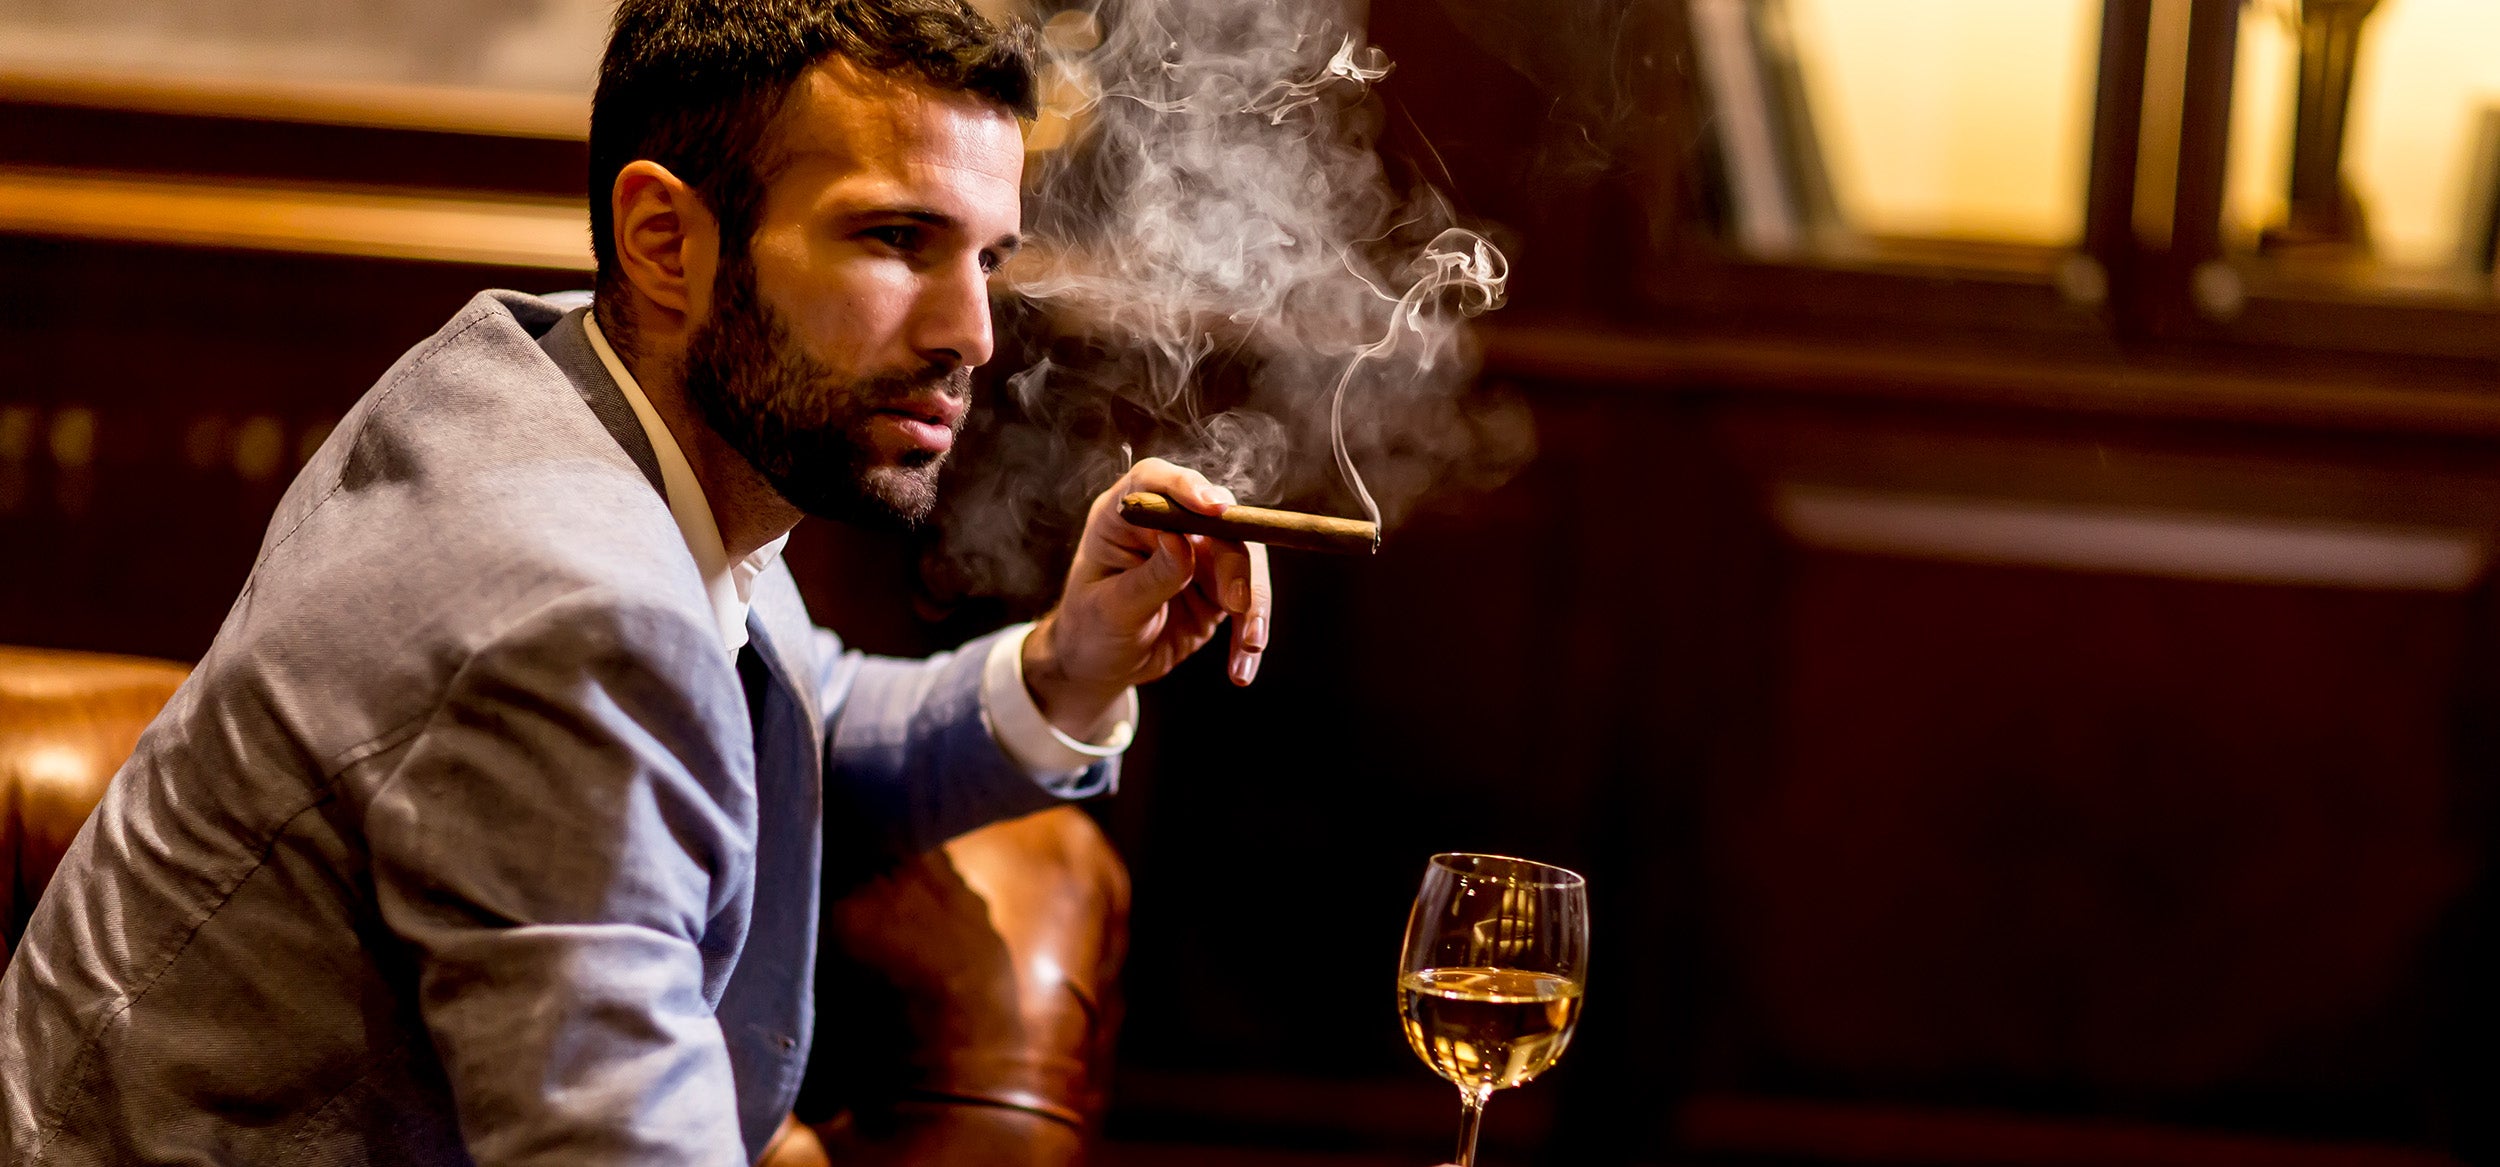 Stilvoll geniessen - Wie raucht man richtig Zigarre?